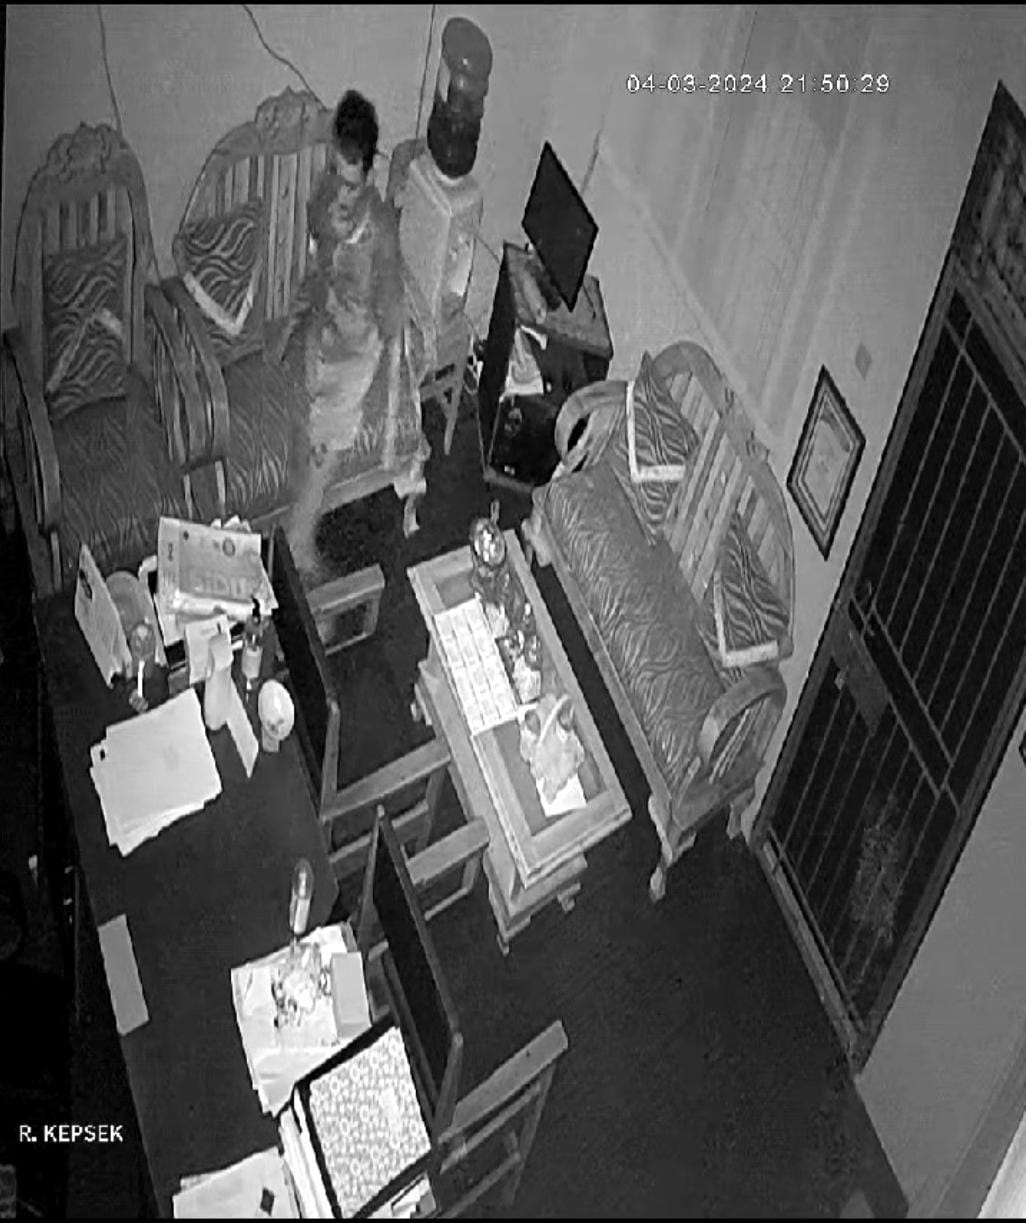 Aksi Pencurian di Sebuah SMK di Tegal Terekam CCTV, Pelaku Gasak Laptop, HP dan Uang Rp8.000